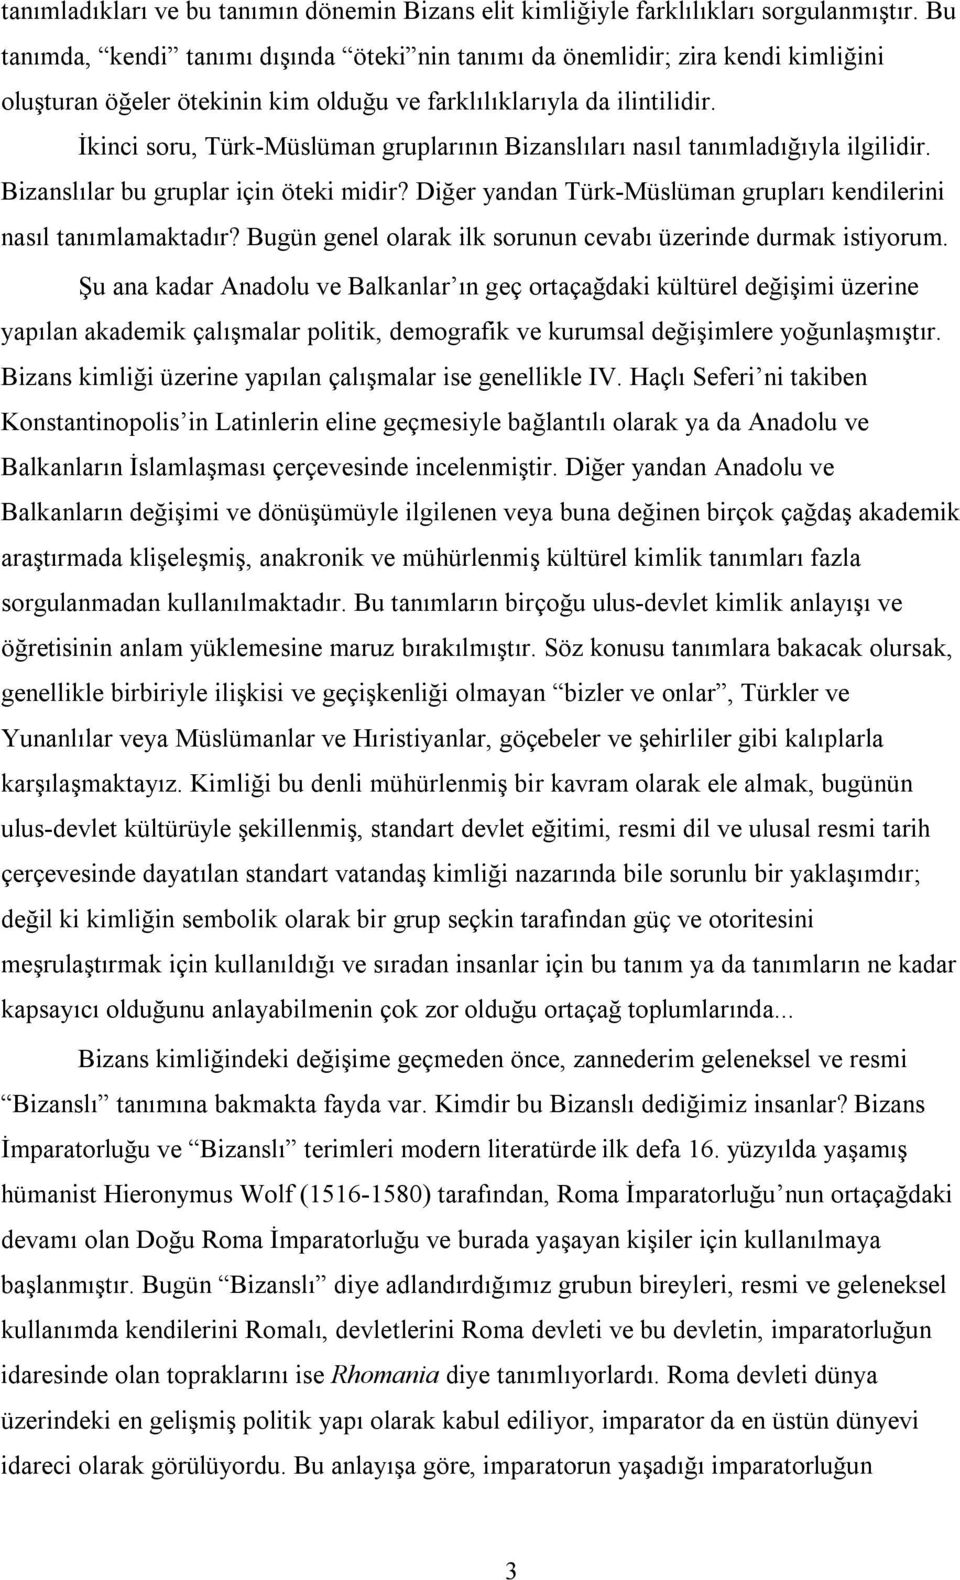 İkinci soru, Türk-Müslüman gruplarının Bizanslıları nasıl tanımladığıyla ilgilidir. Bizanslılar bu gruplar için öteki midir? Diğer yandan Türk-Müslüman grupları kendilerini nasıl tanımlamaktadır?